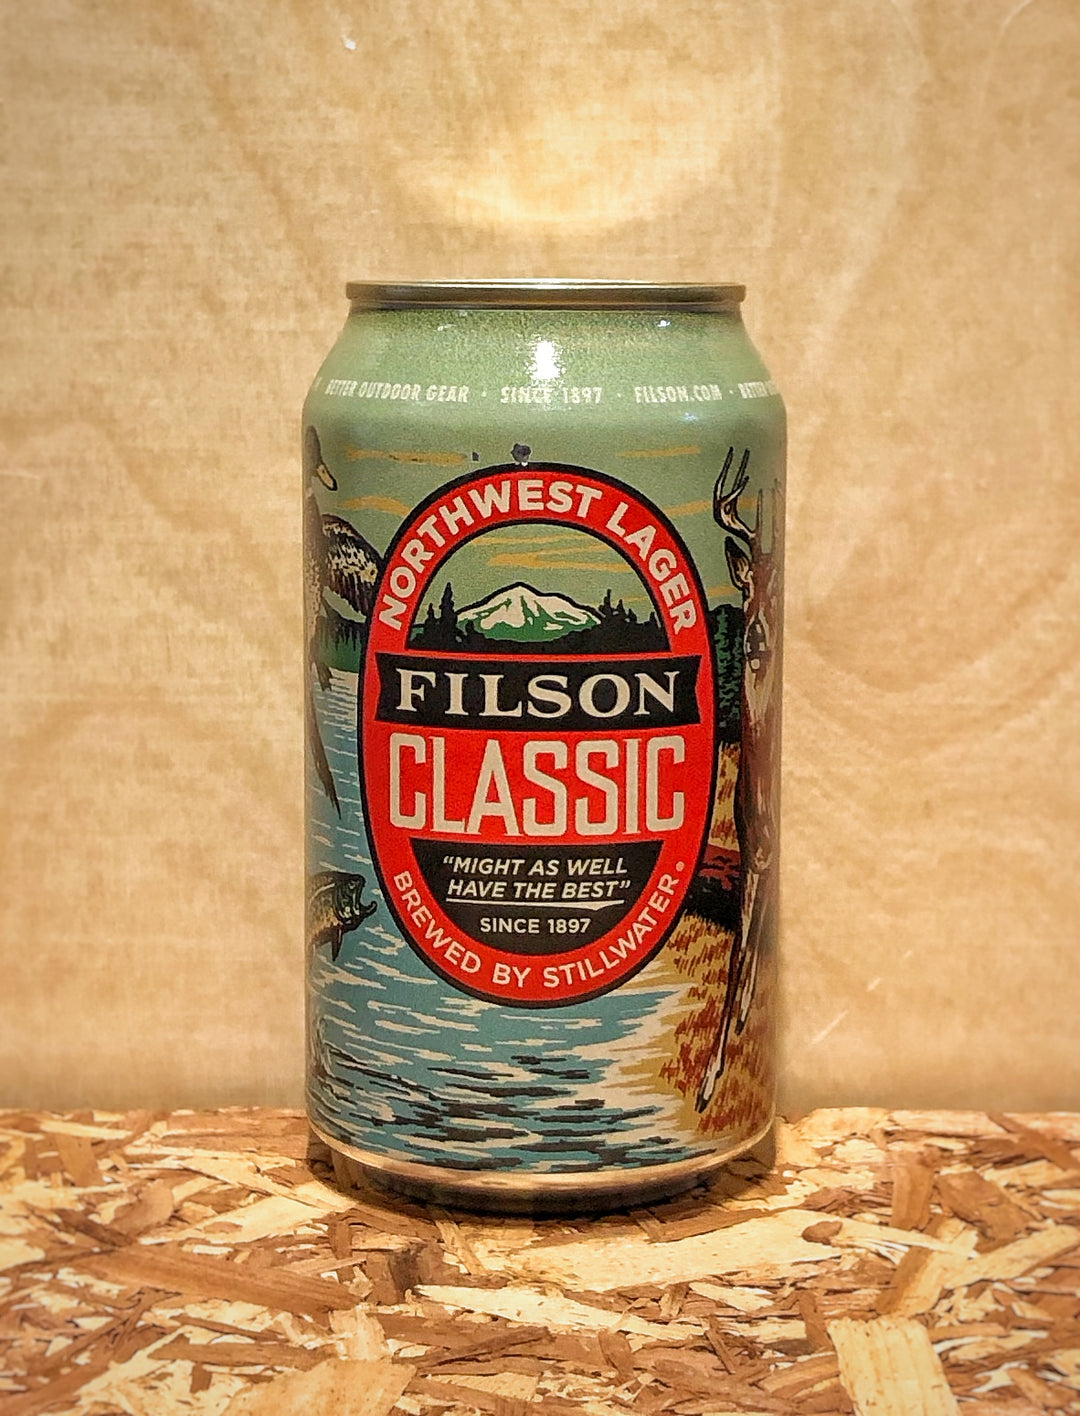 Stillwater 'Filson Classic' Northwest Lager (Grand Mound, WA)